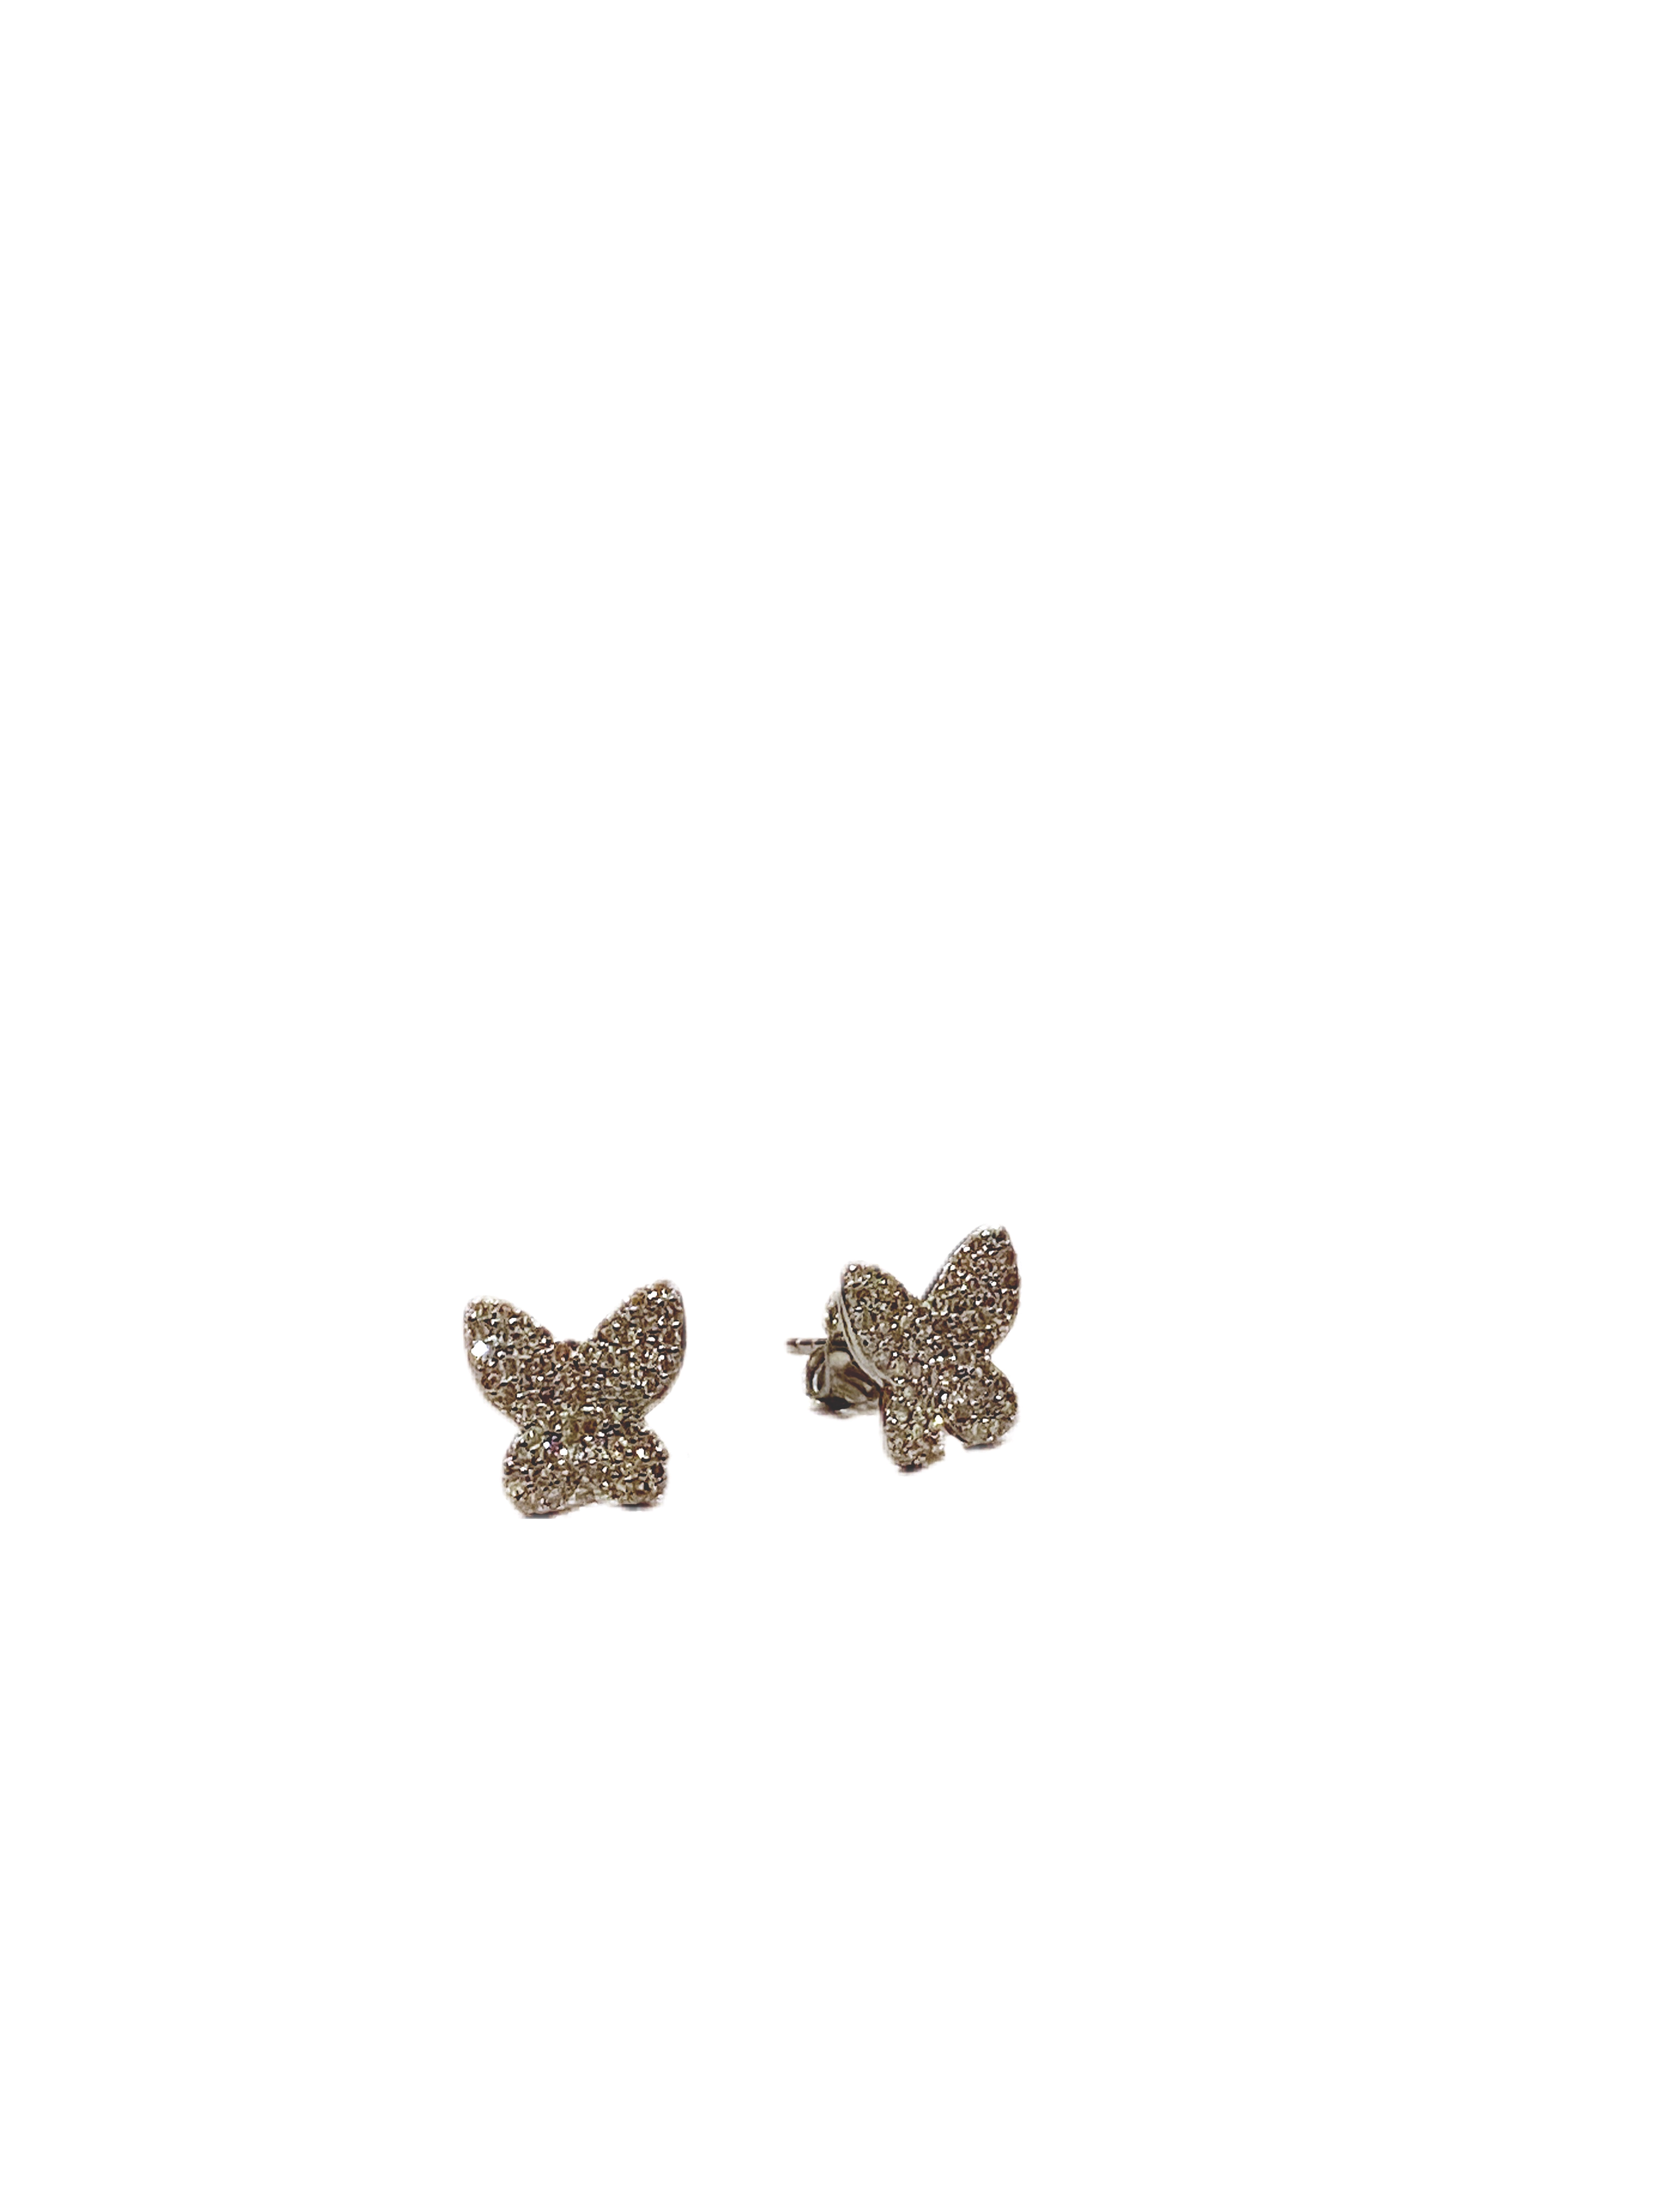 S.Row Designs Large Diamond Butterfly Earrings